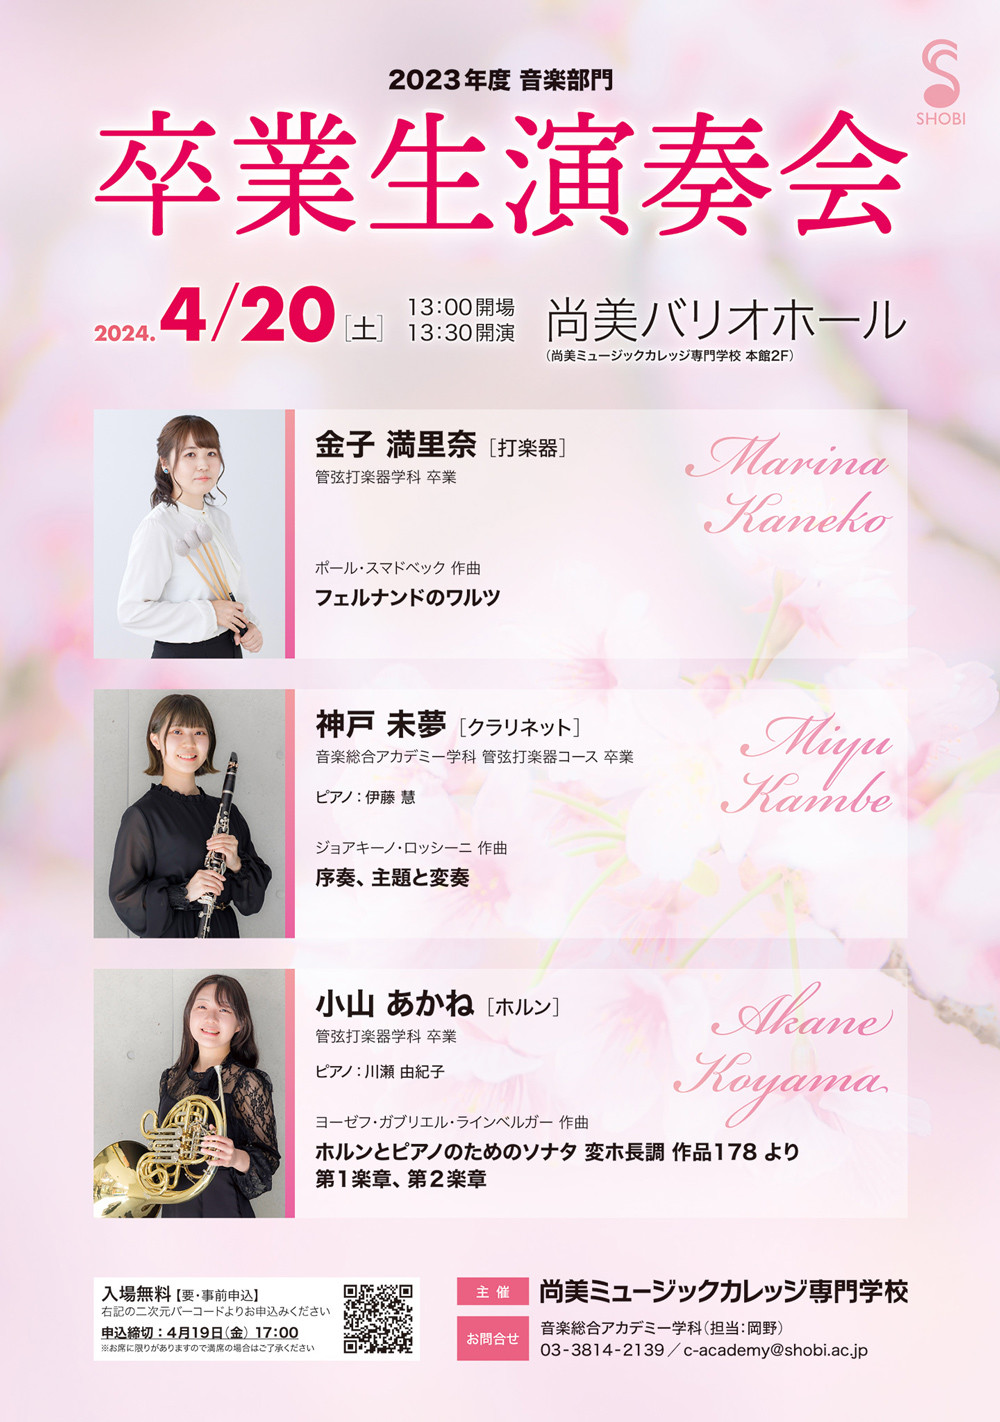 【4月20日開催】2023年度 音楽部門「卒業生演奏会」